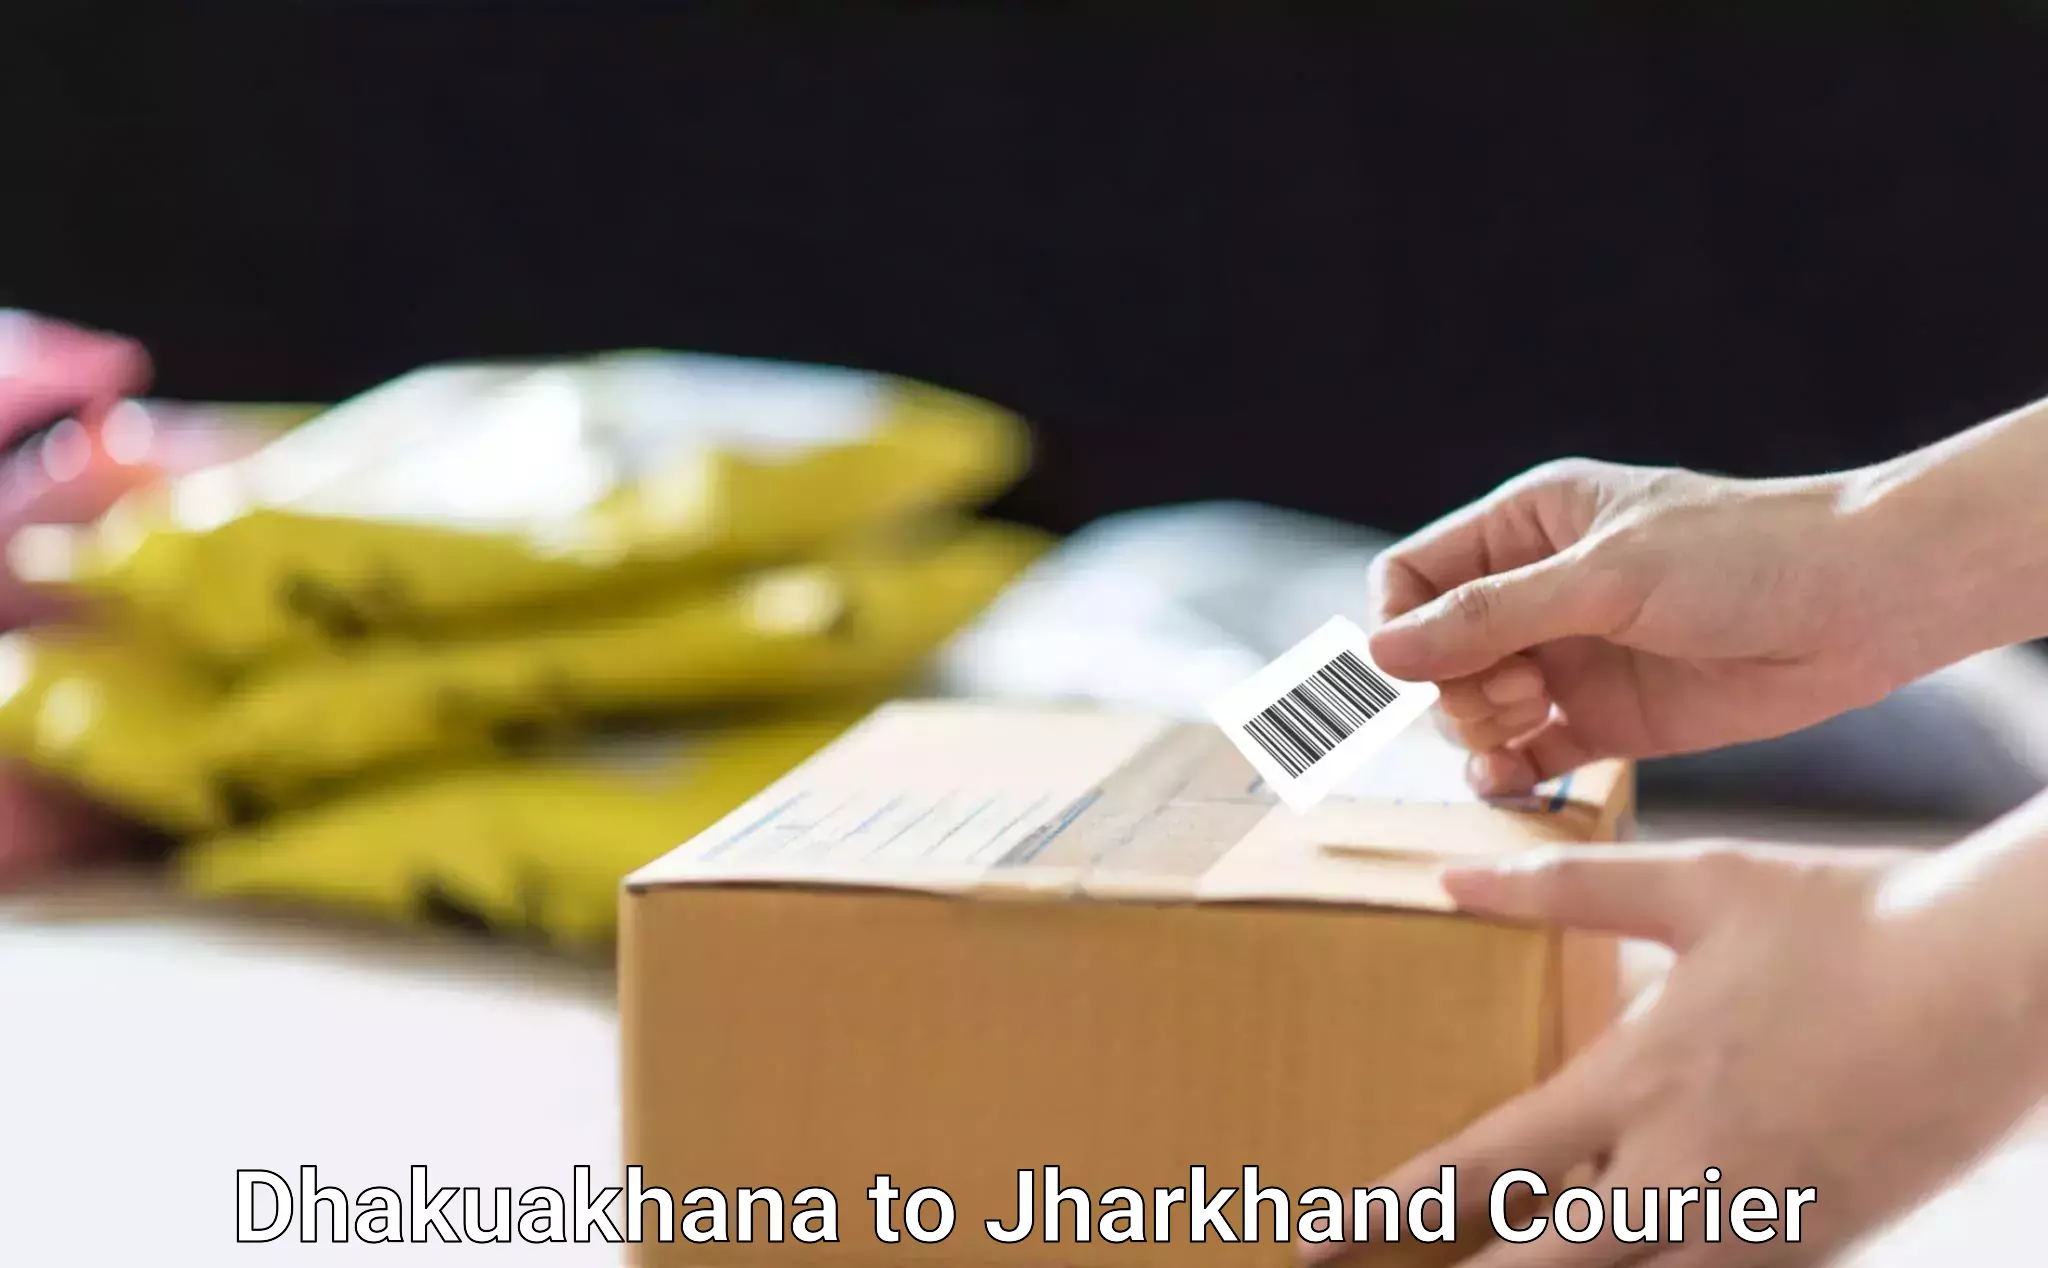 Global shipping solutions Dhakuakhana to Chakradharpur